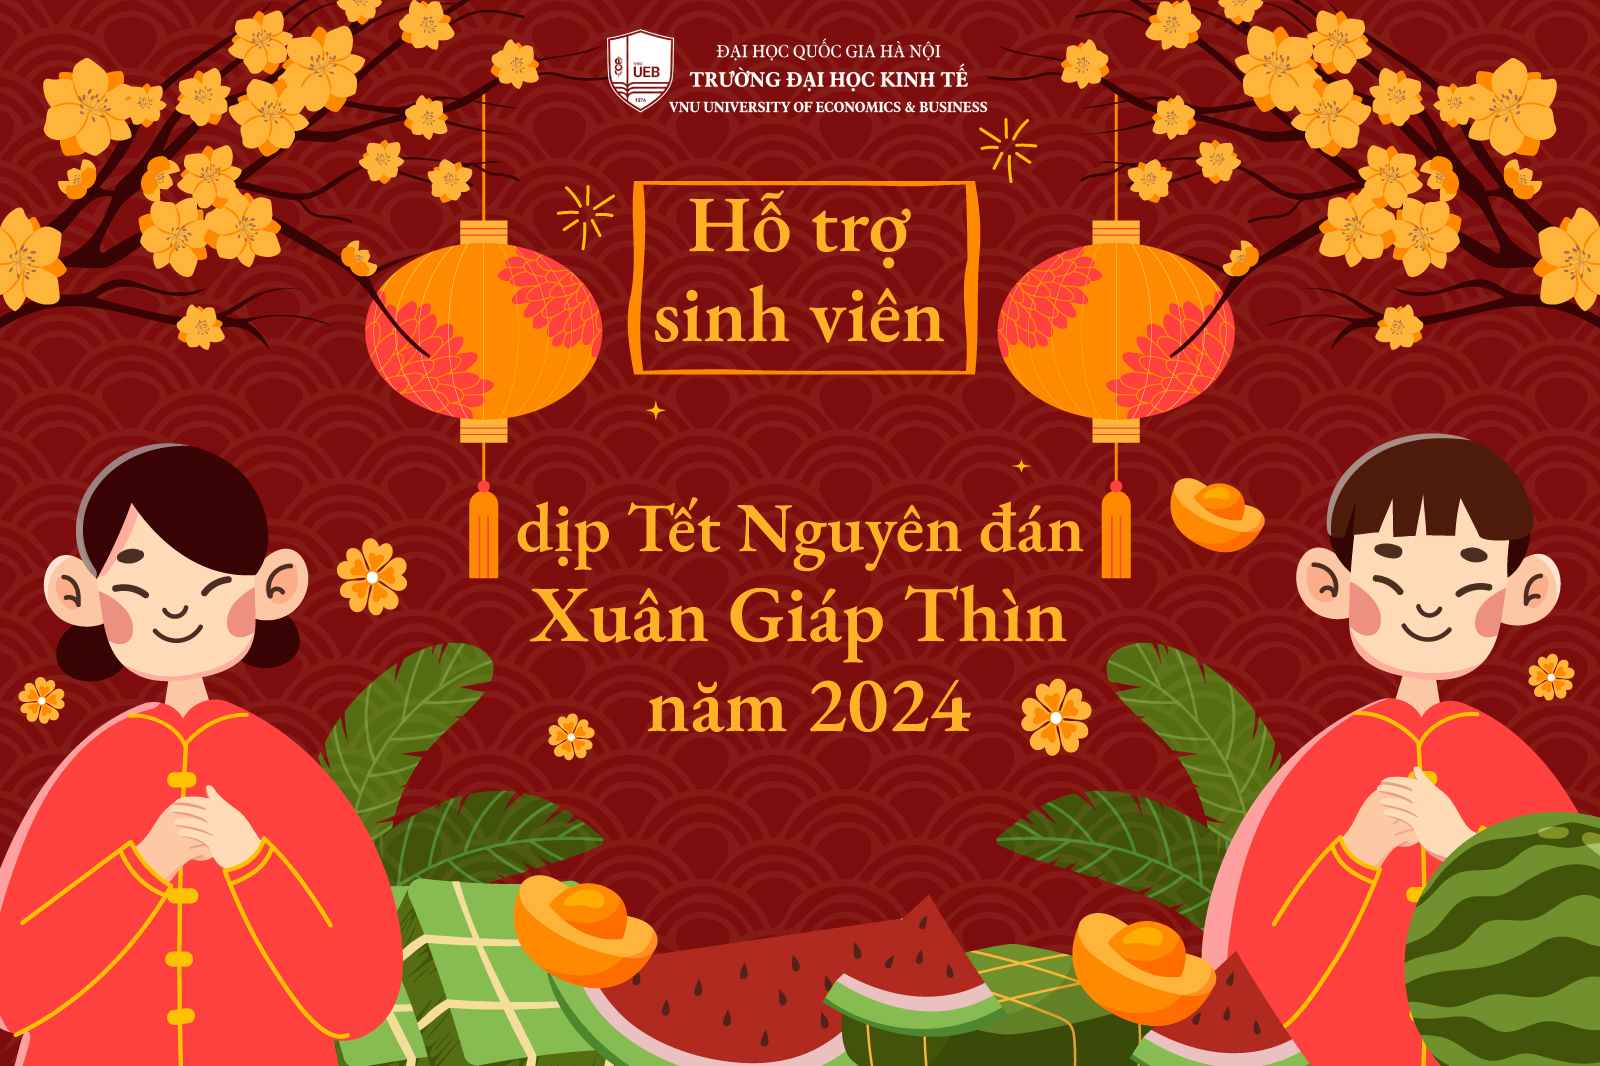 Hỗ trợ sinh viên dịp Tết Nguyên đán – Xuân Giáp Thìn năm 2024